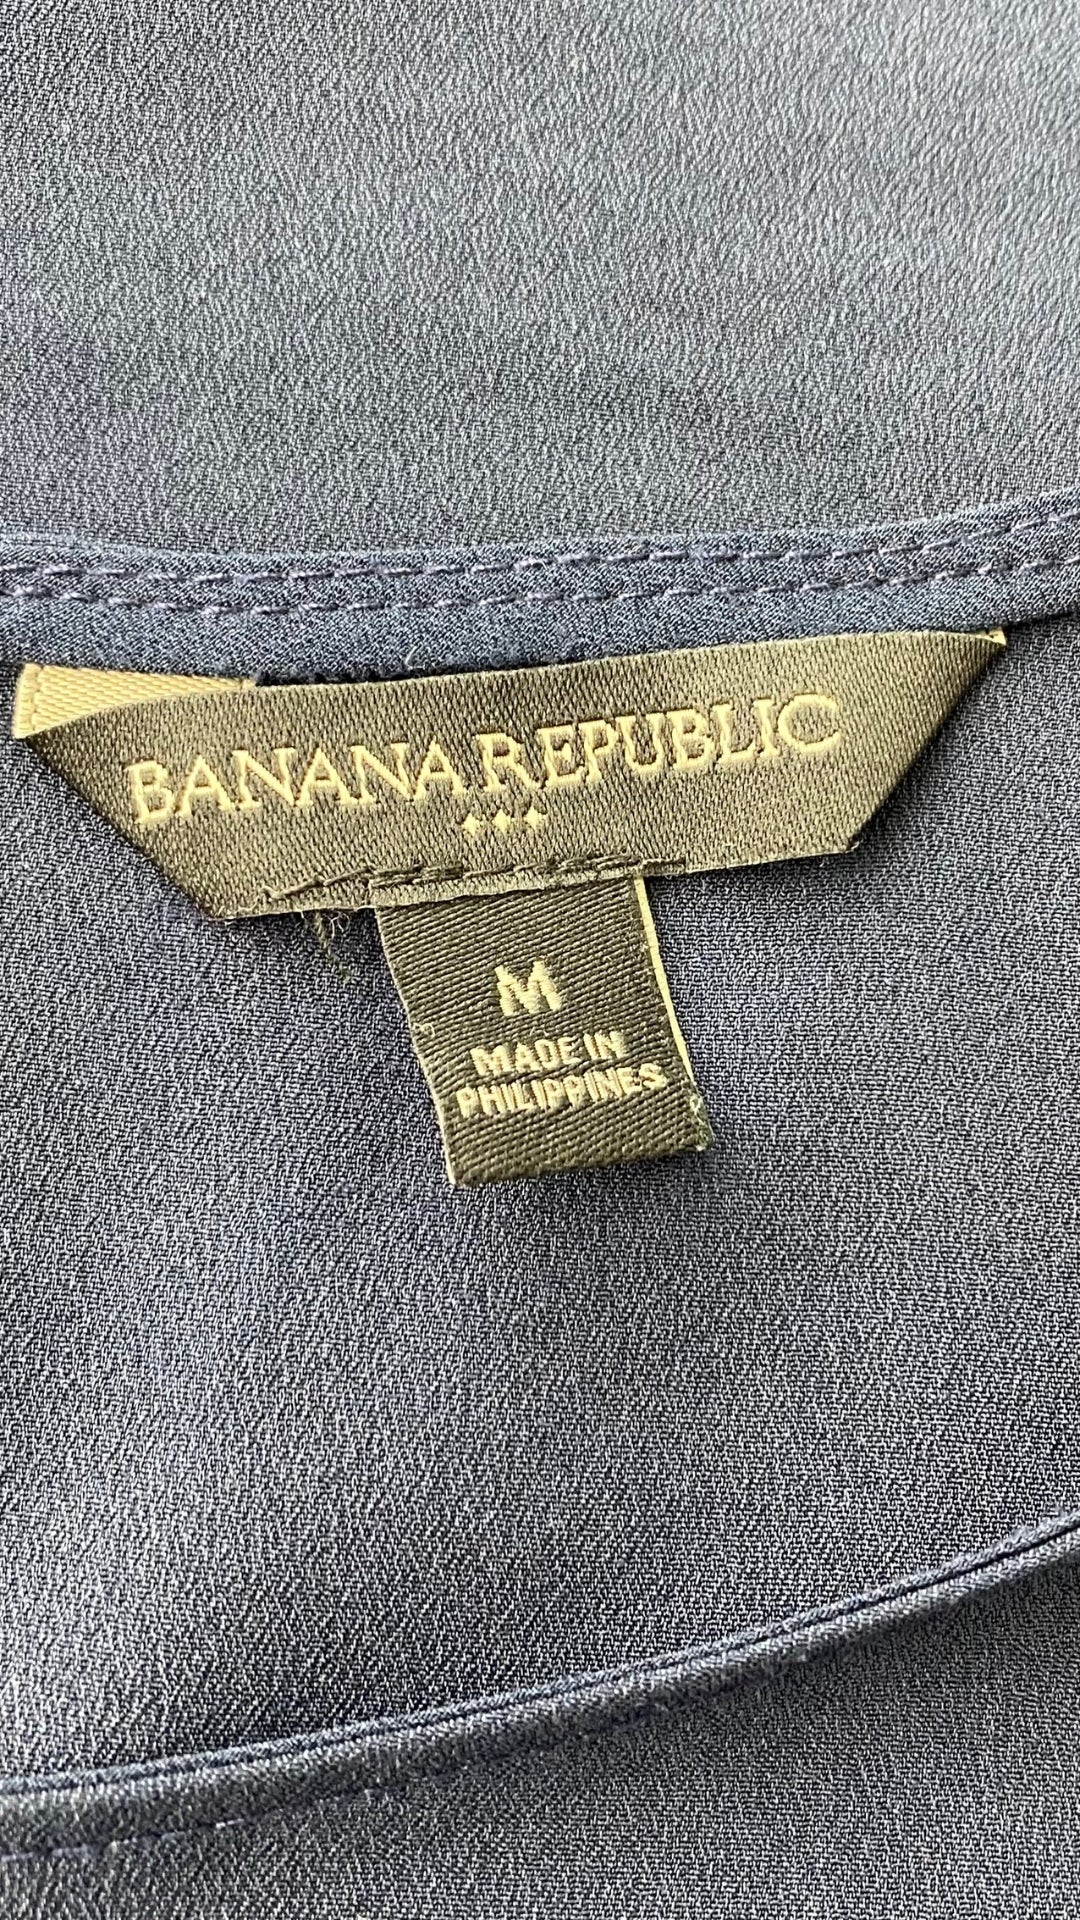 Camisole chic marine avec liséré de bleu azur, Banana Republic, taille medium. Vue de l'étiquette de marque, taille.